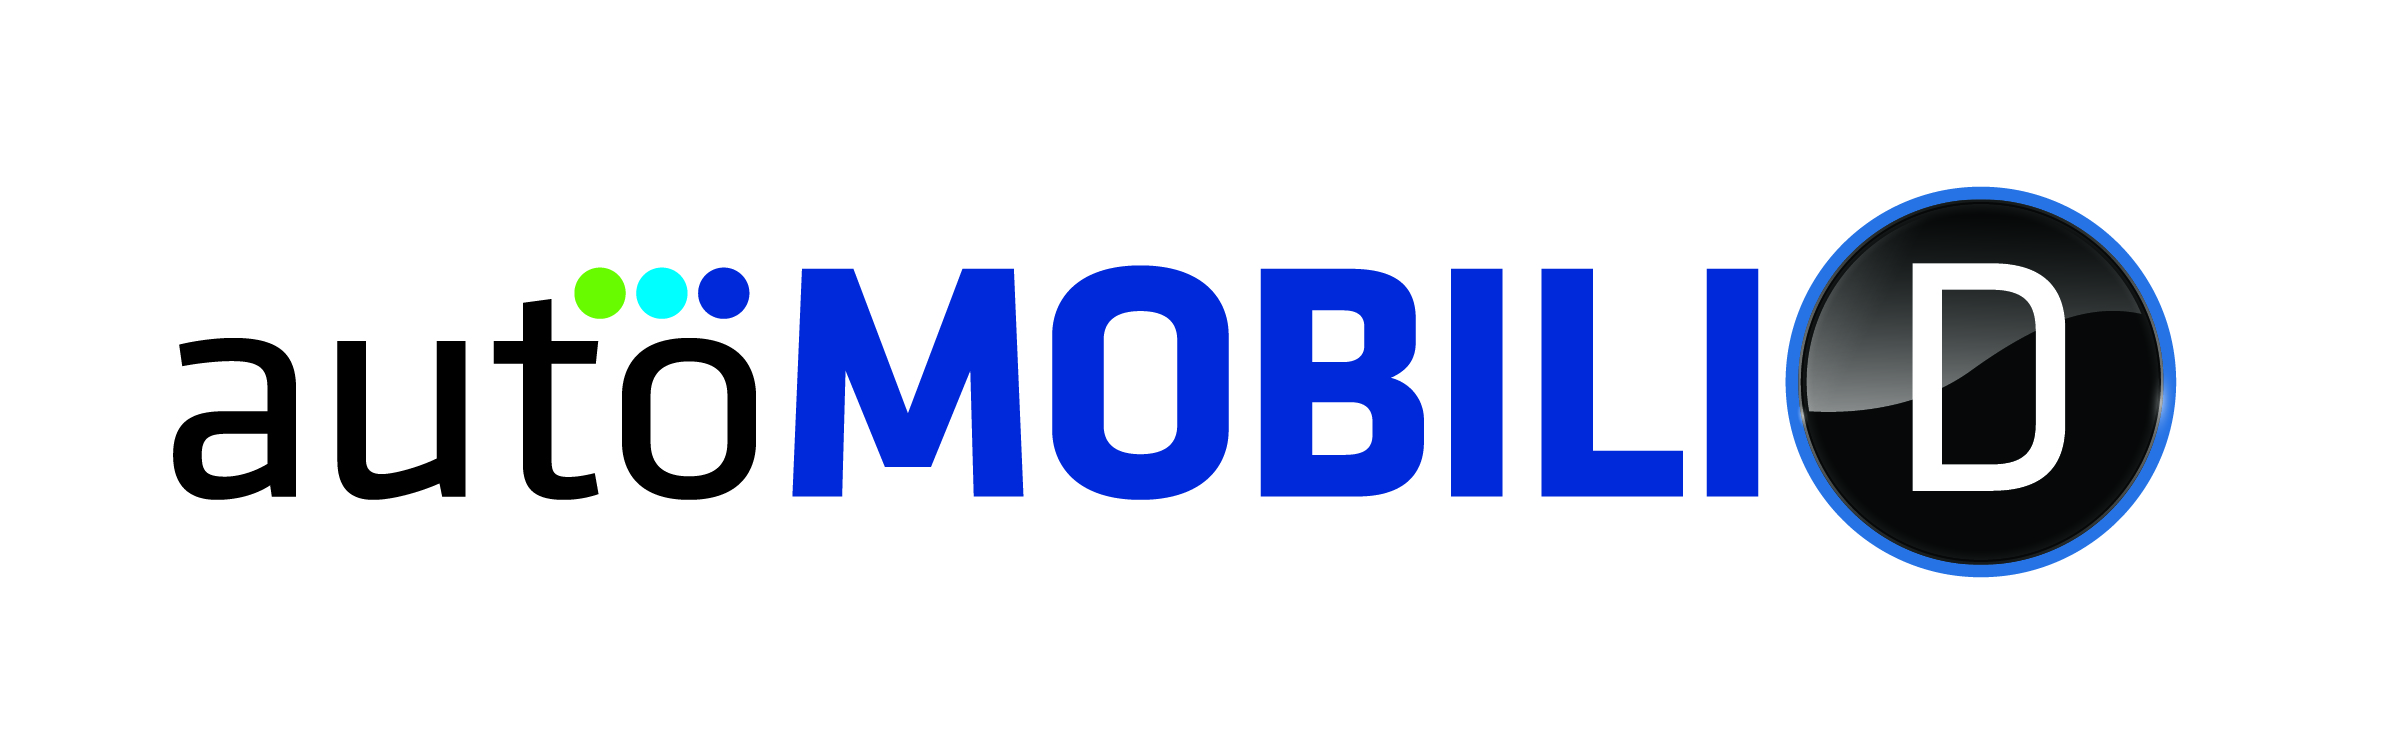 2022 AutoMobiliD logo.jpg